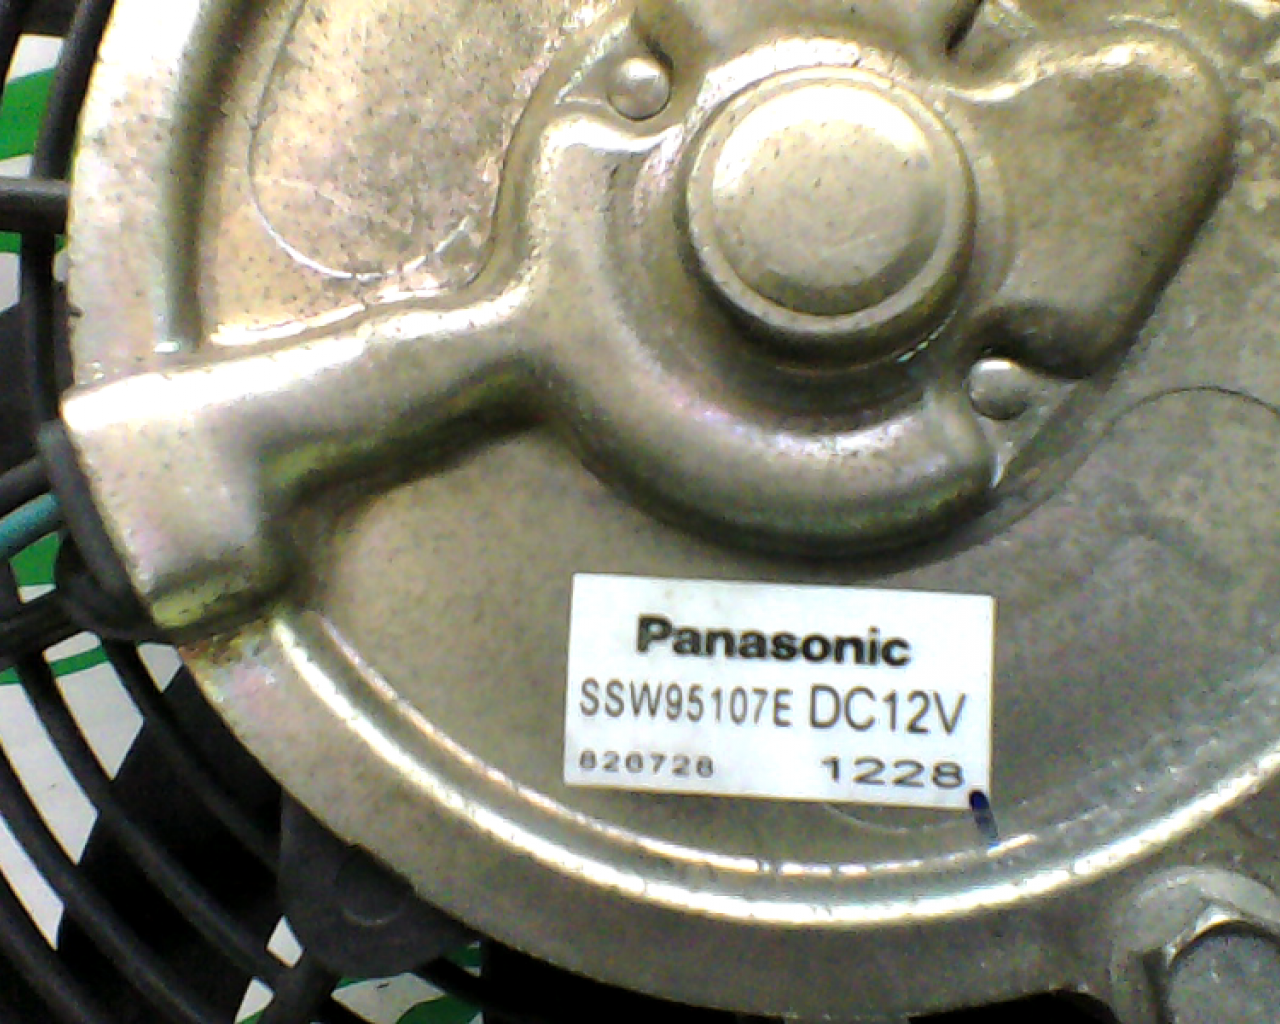 Ventilador del radiador Kymco Xciting 500 (2010-2012)